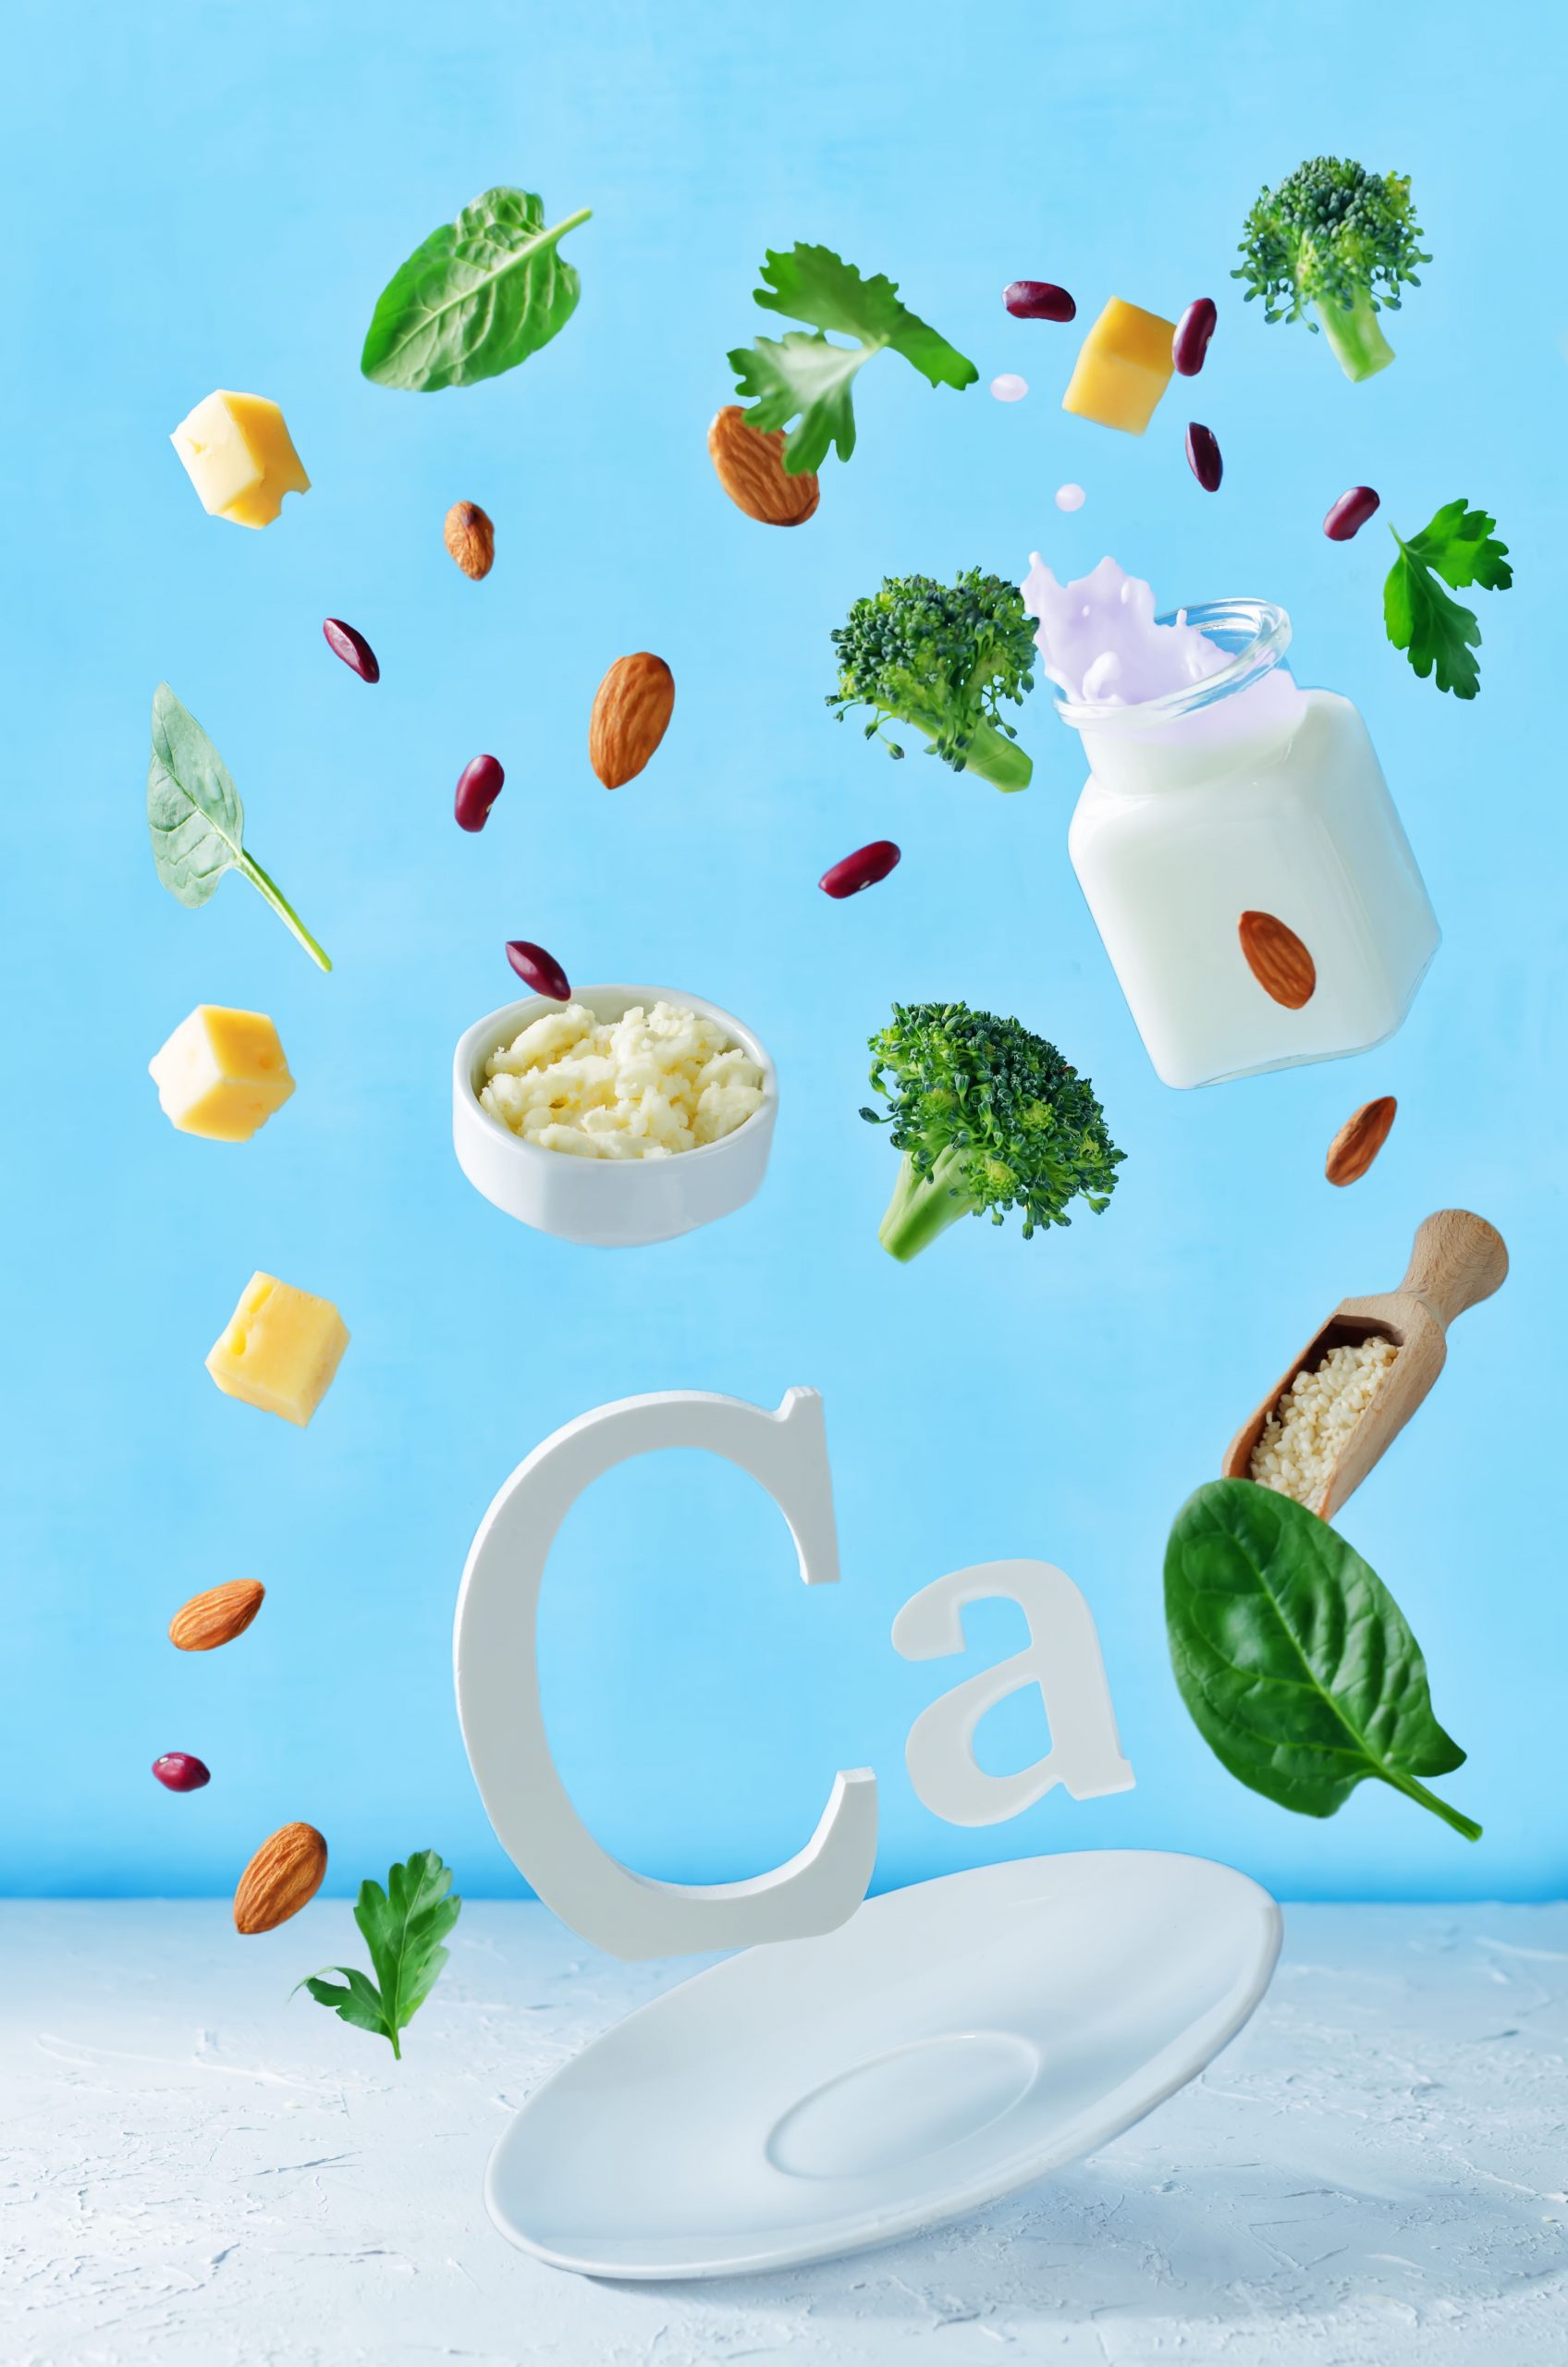 Kalzium ist in Milch und vielen grünen Lebensmitteln